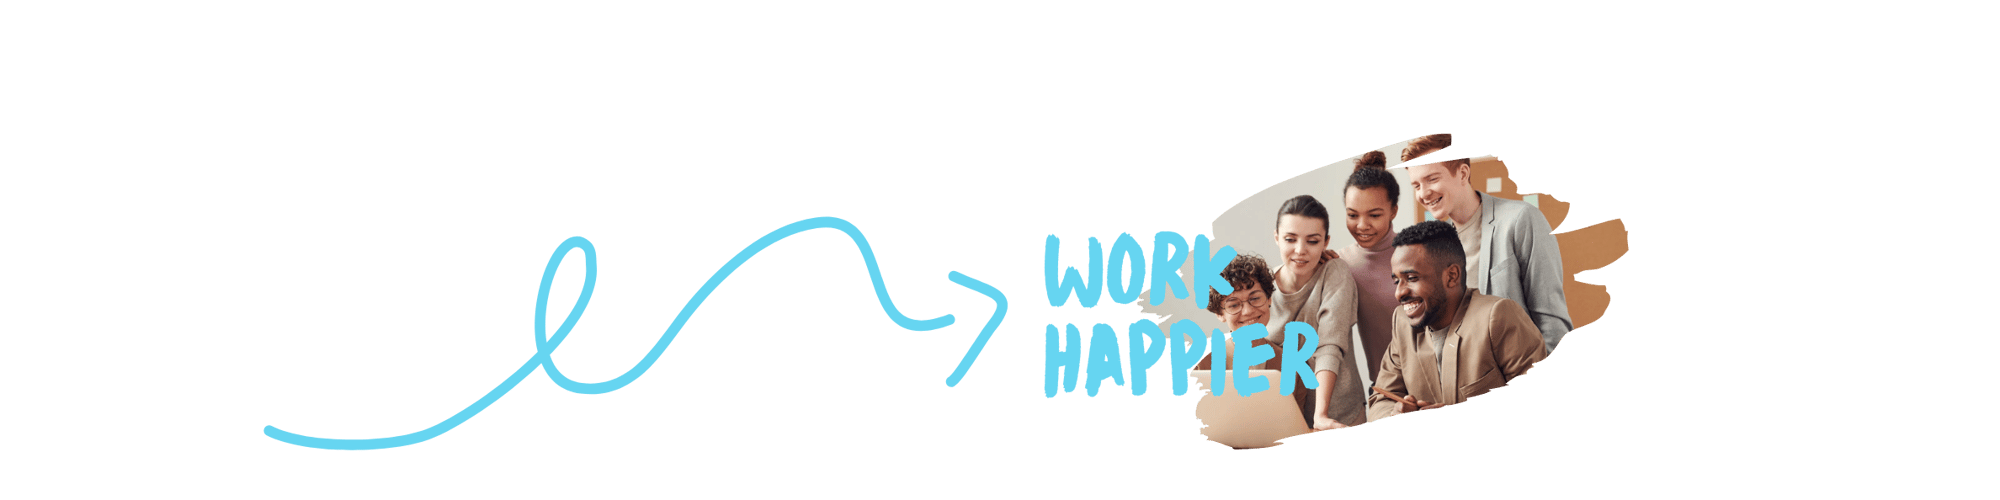 Work happier (19)